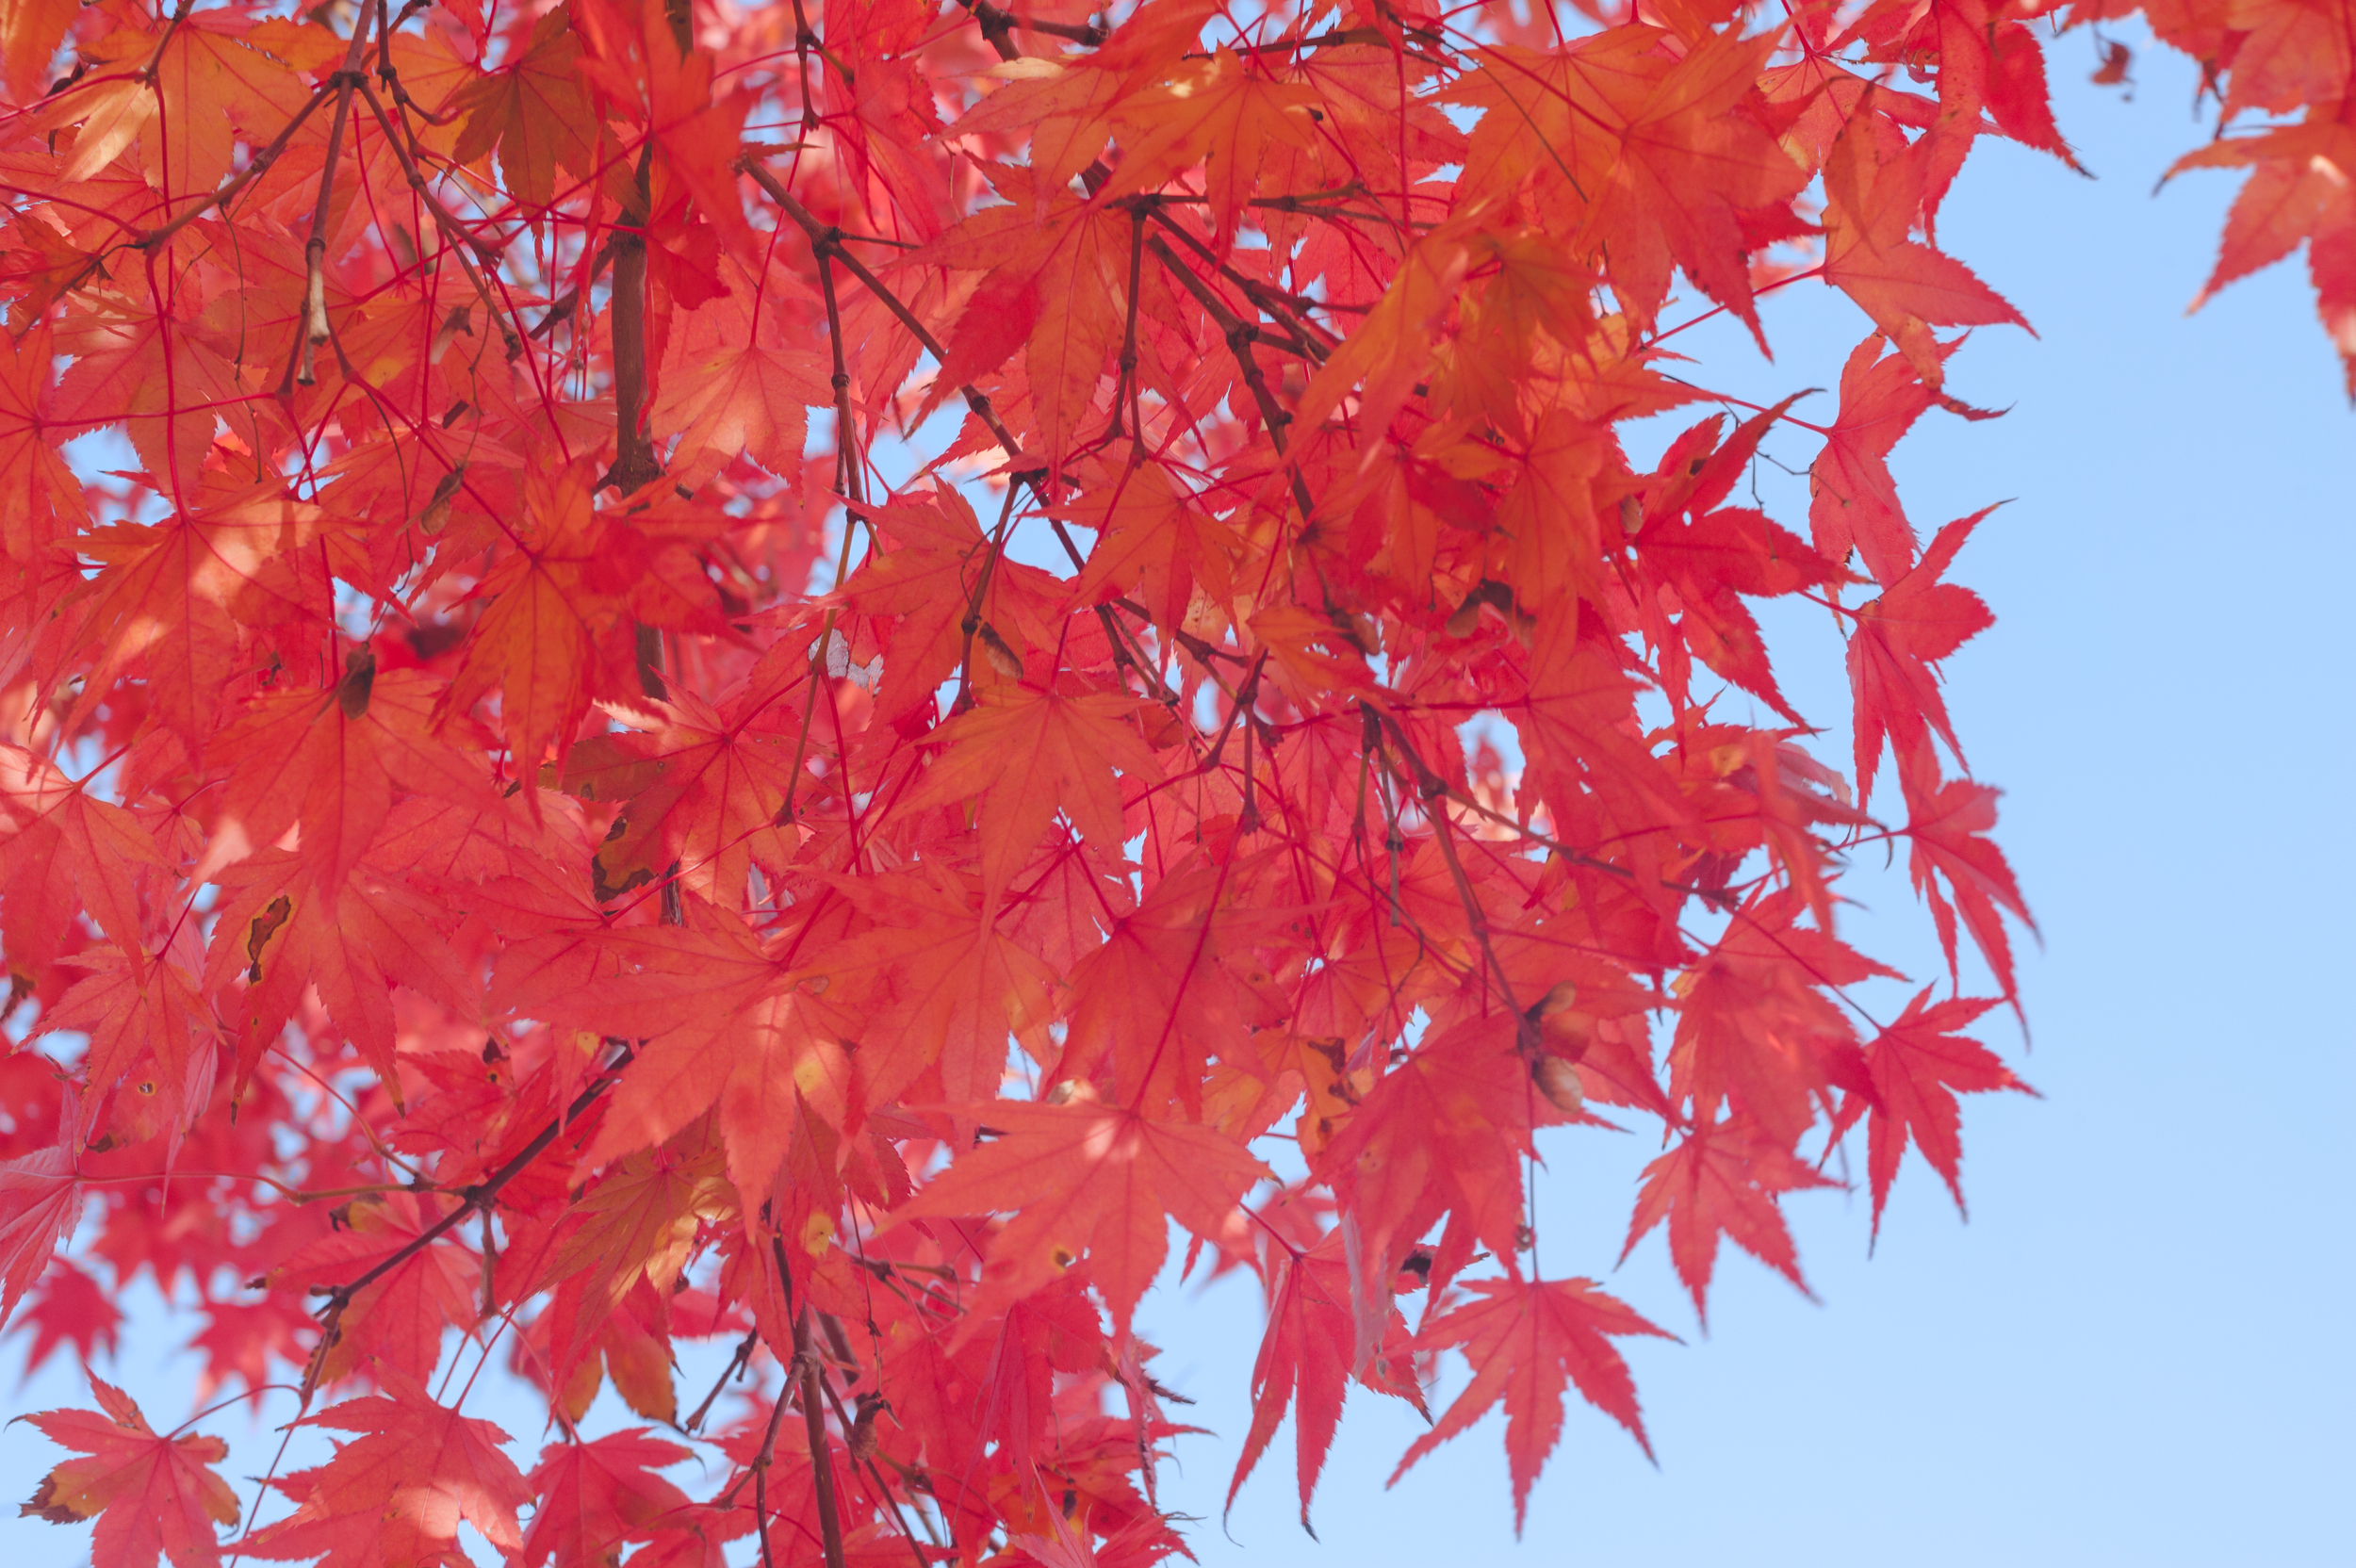 AutumnInKoreaSoenunsaParkFallLeaves (3 of 37).jpg